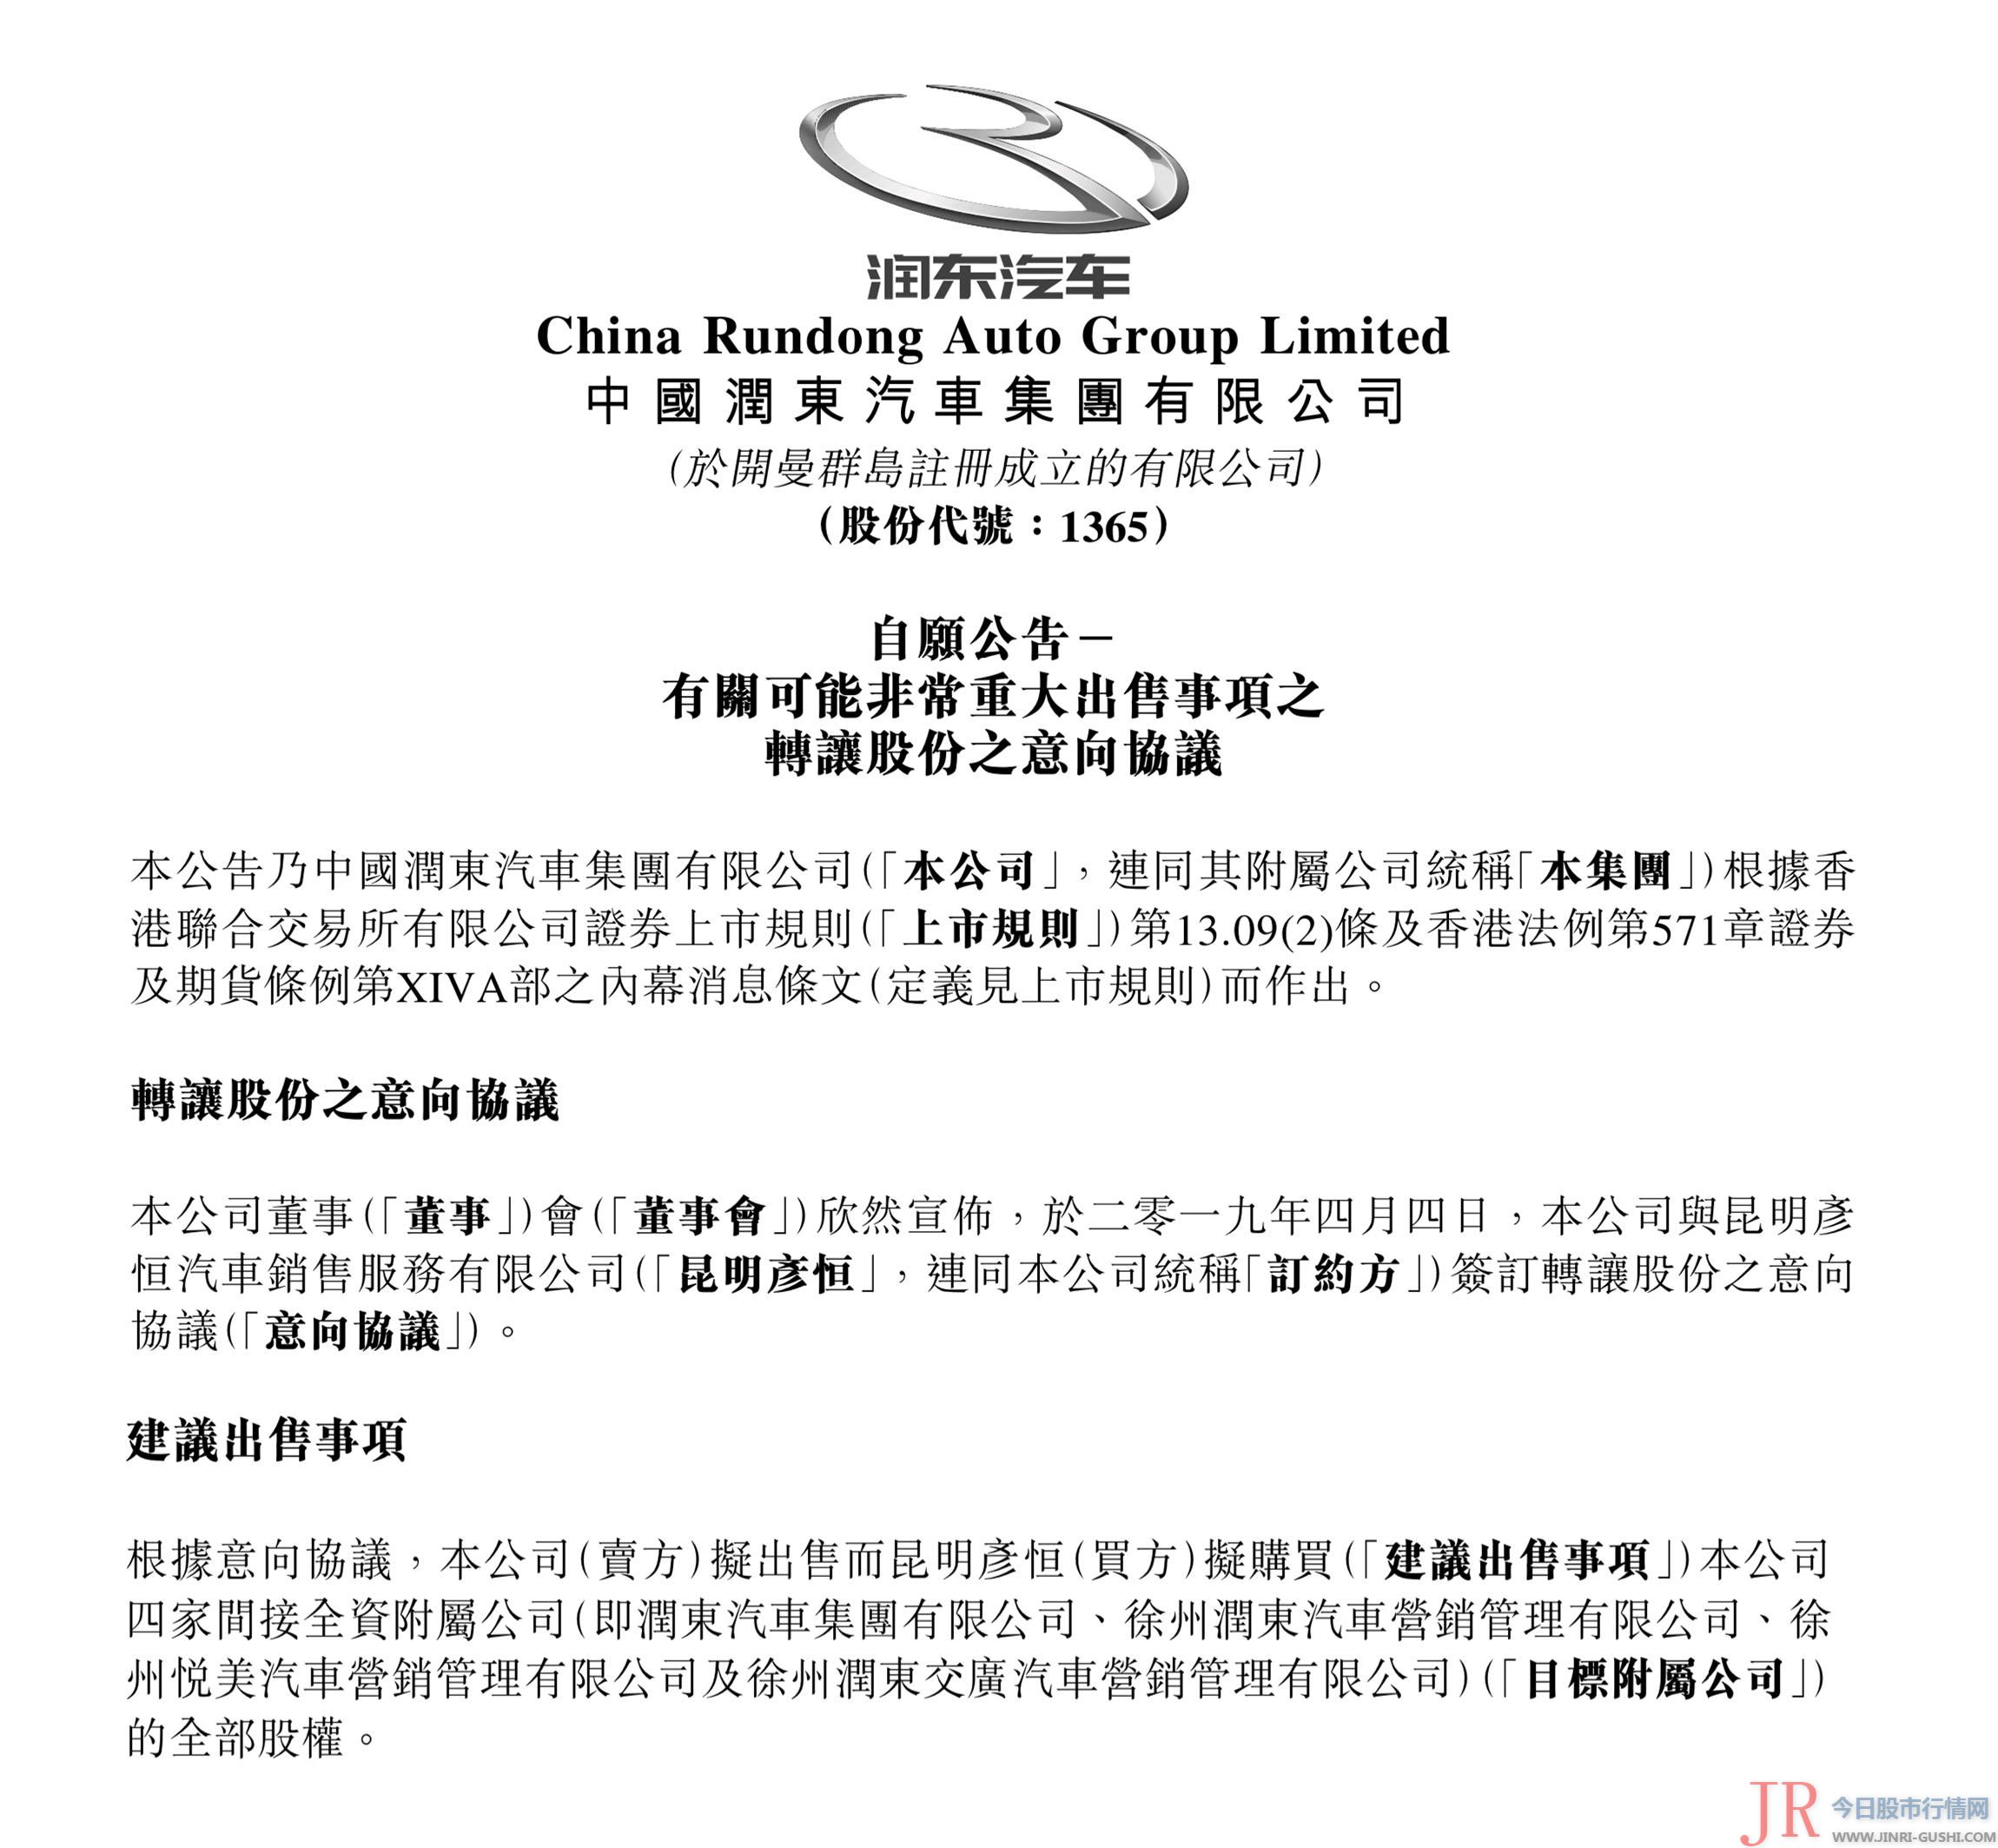 中国润东汽车集团有限公司（以下简称“润东汽车”）发布公告称